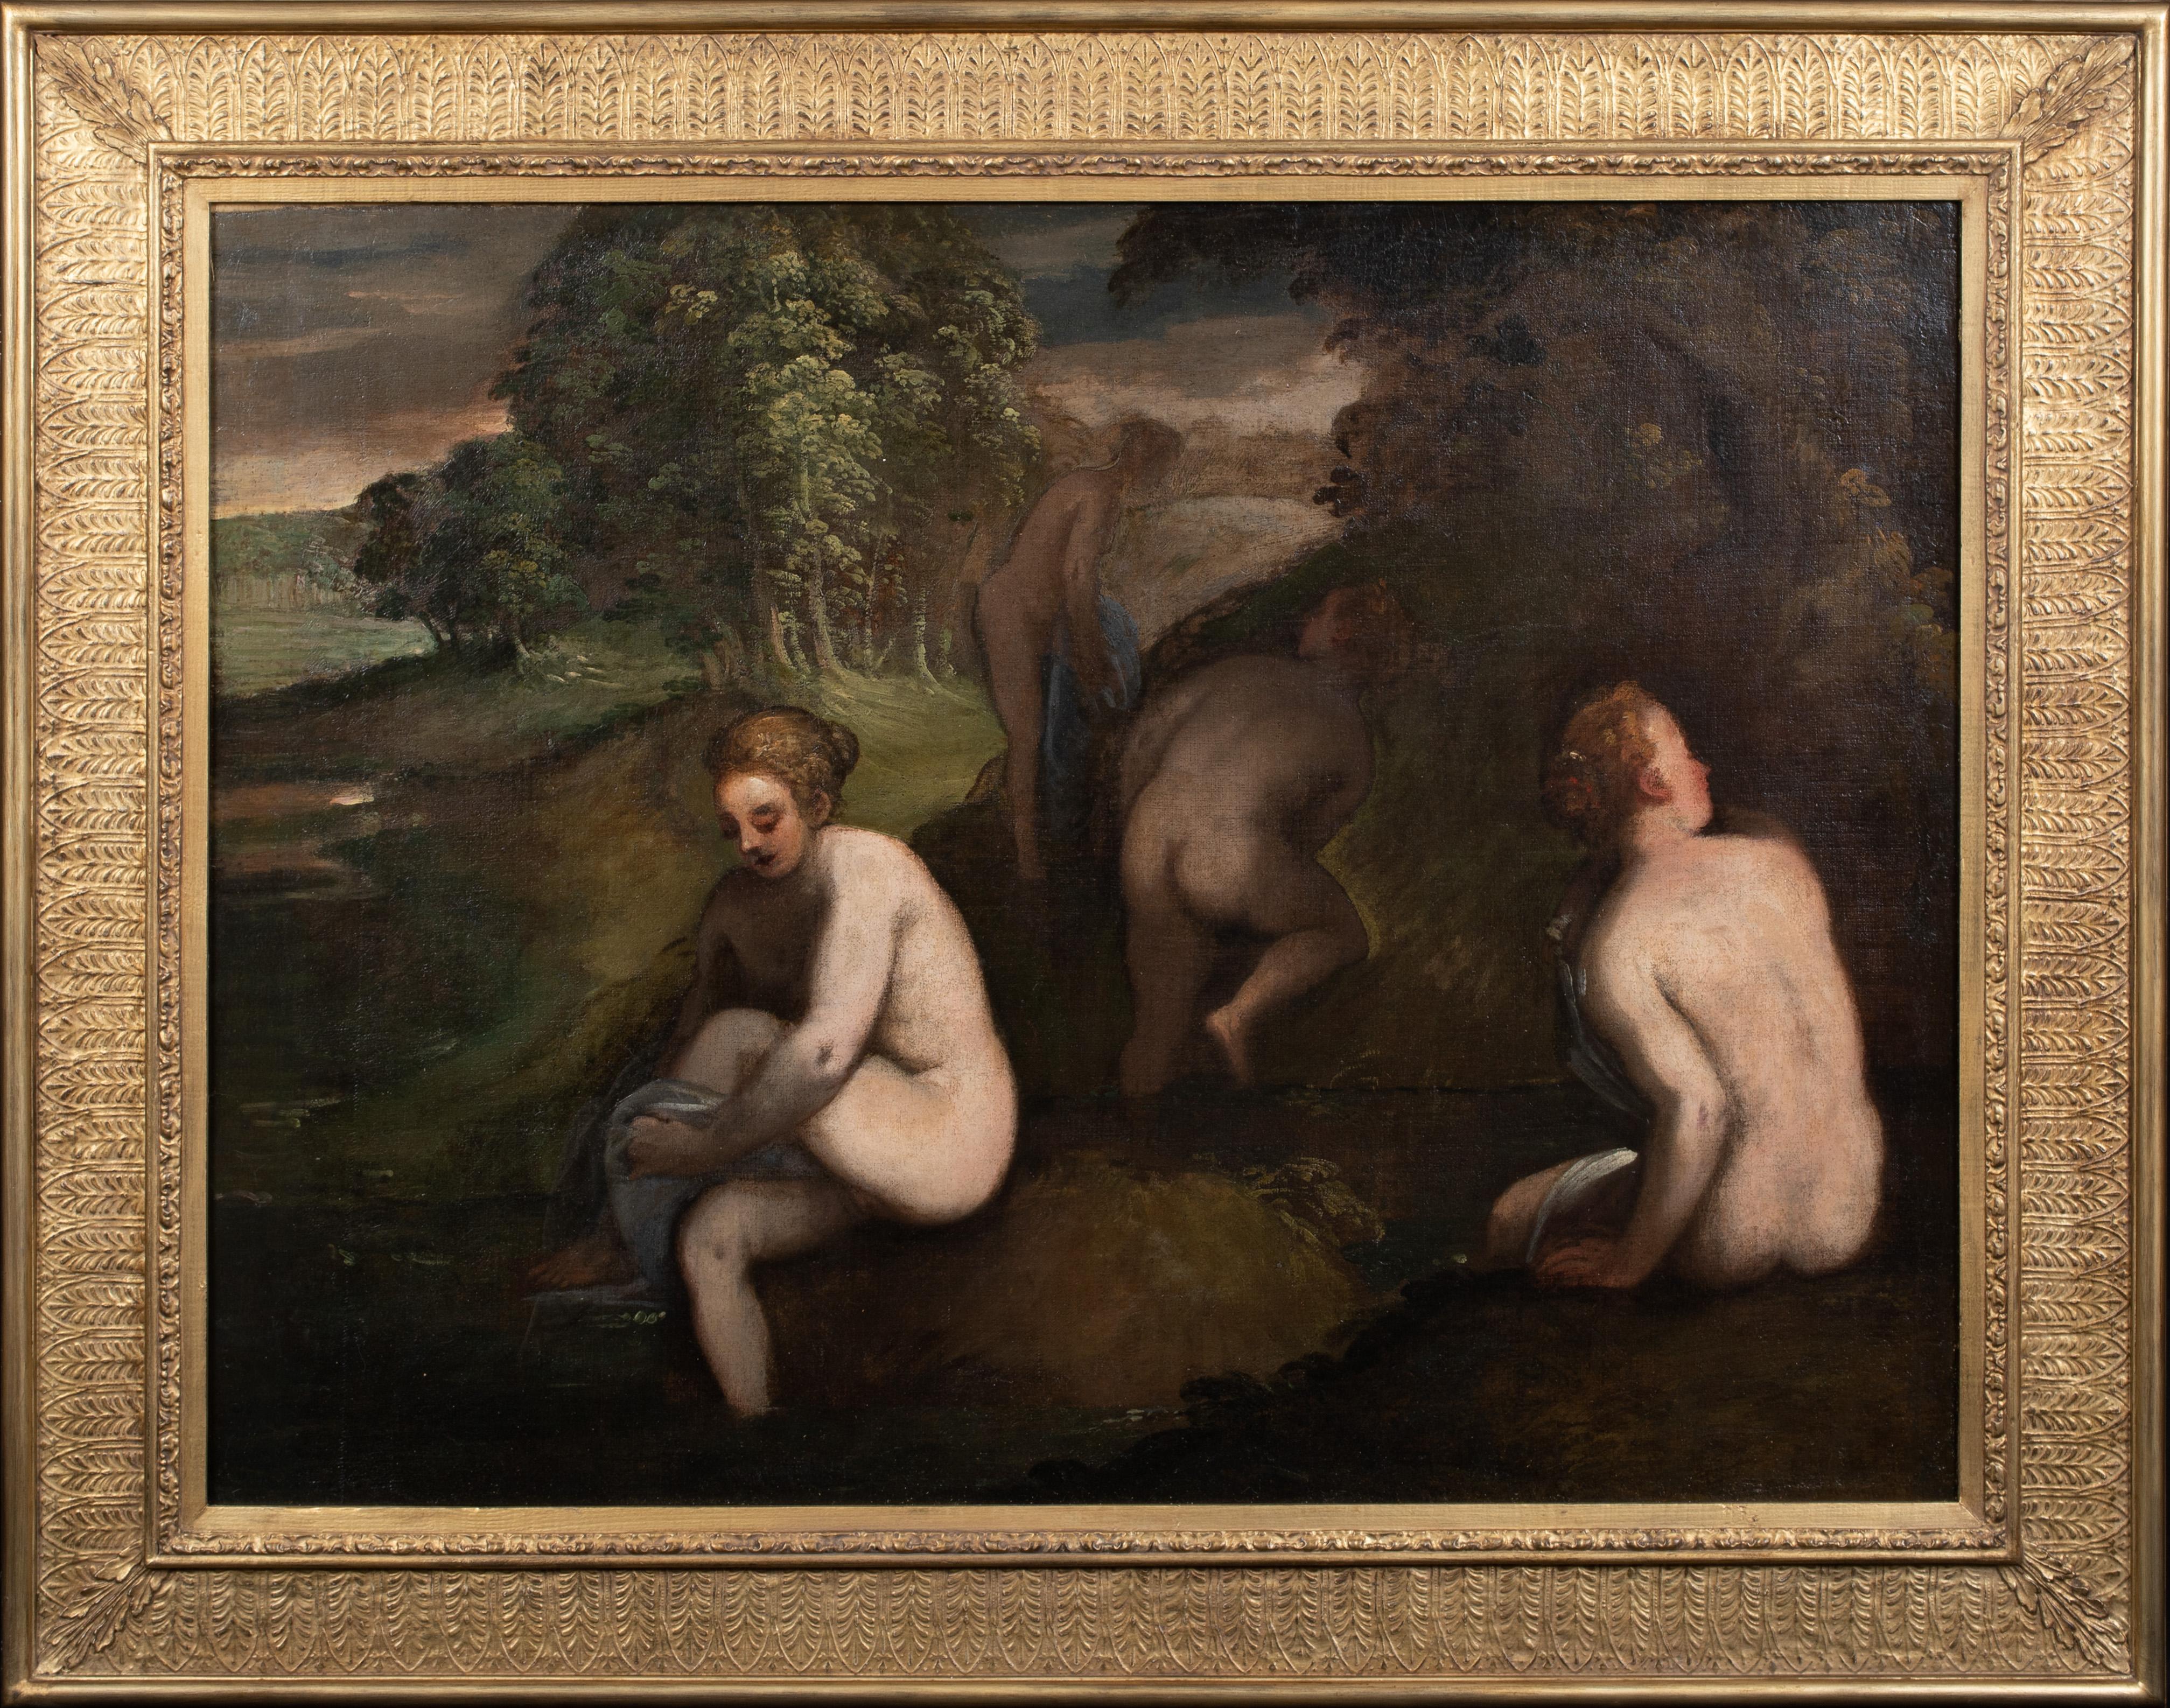 Portrait Painting Unknown - Nus se baignant dans un paysage, 16e/17e siècle